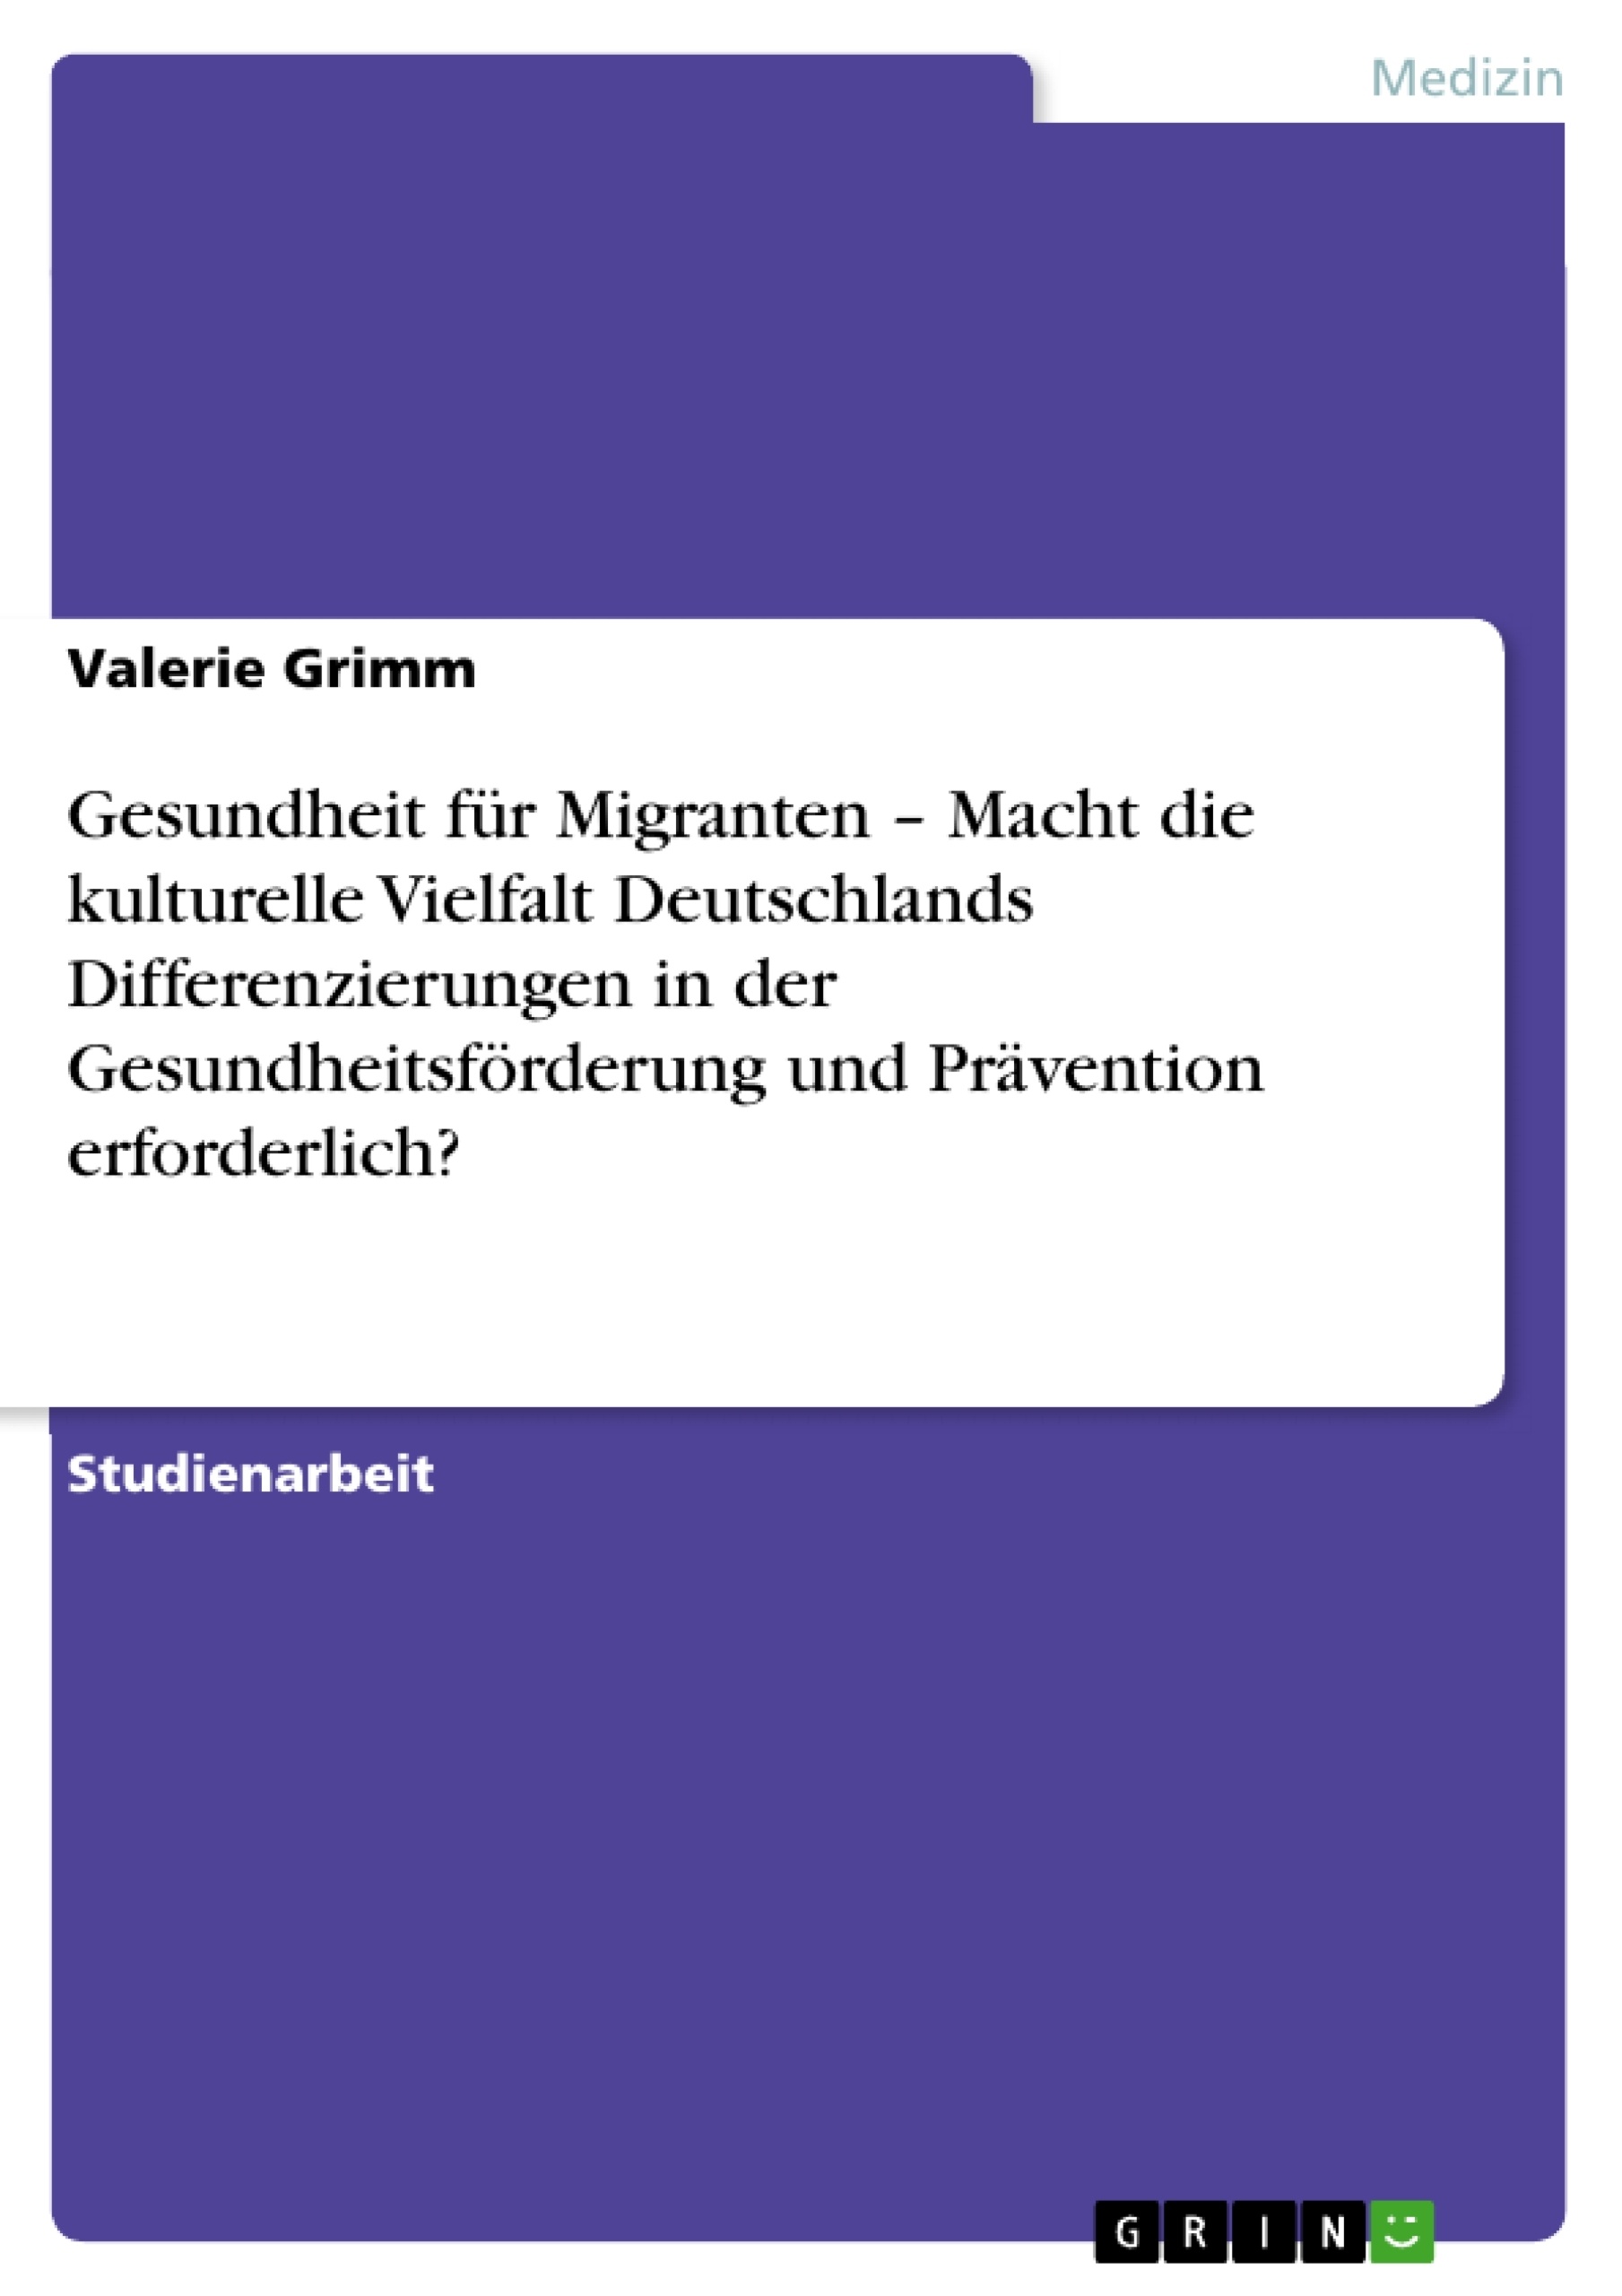 Title: Gesundheit für Migranten – Macht die kulturelle Vielfalt Deutschlands Differenzierungen in der Gesundheitsförderung und Prävention erforderlich?